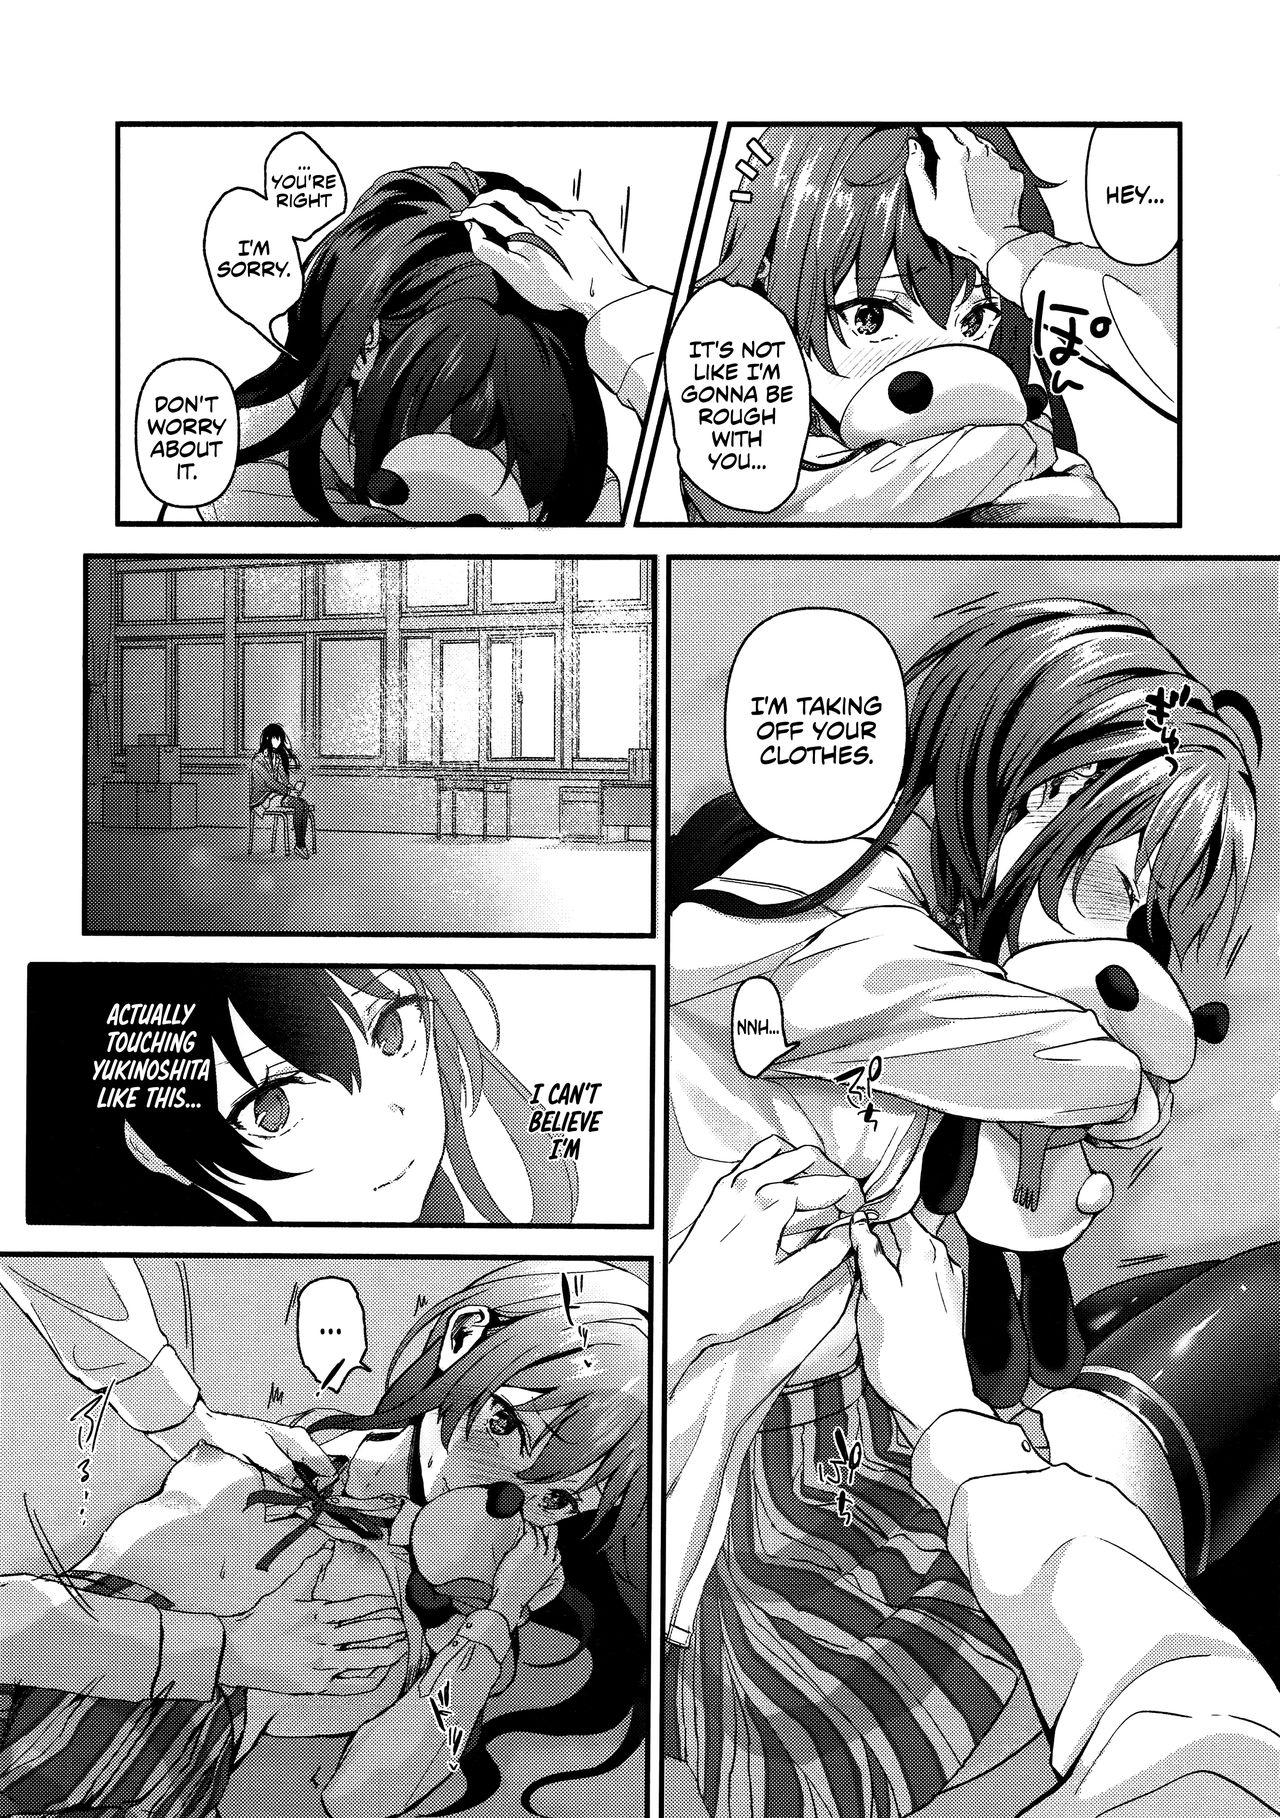 Passionate Yukinohi. - Yahari ore no seishun love come wa machigatteiru Bigass - Page 4